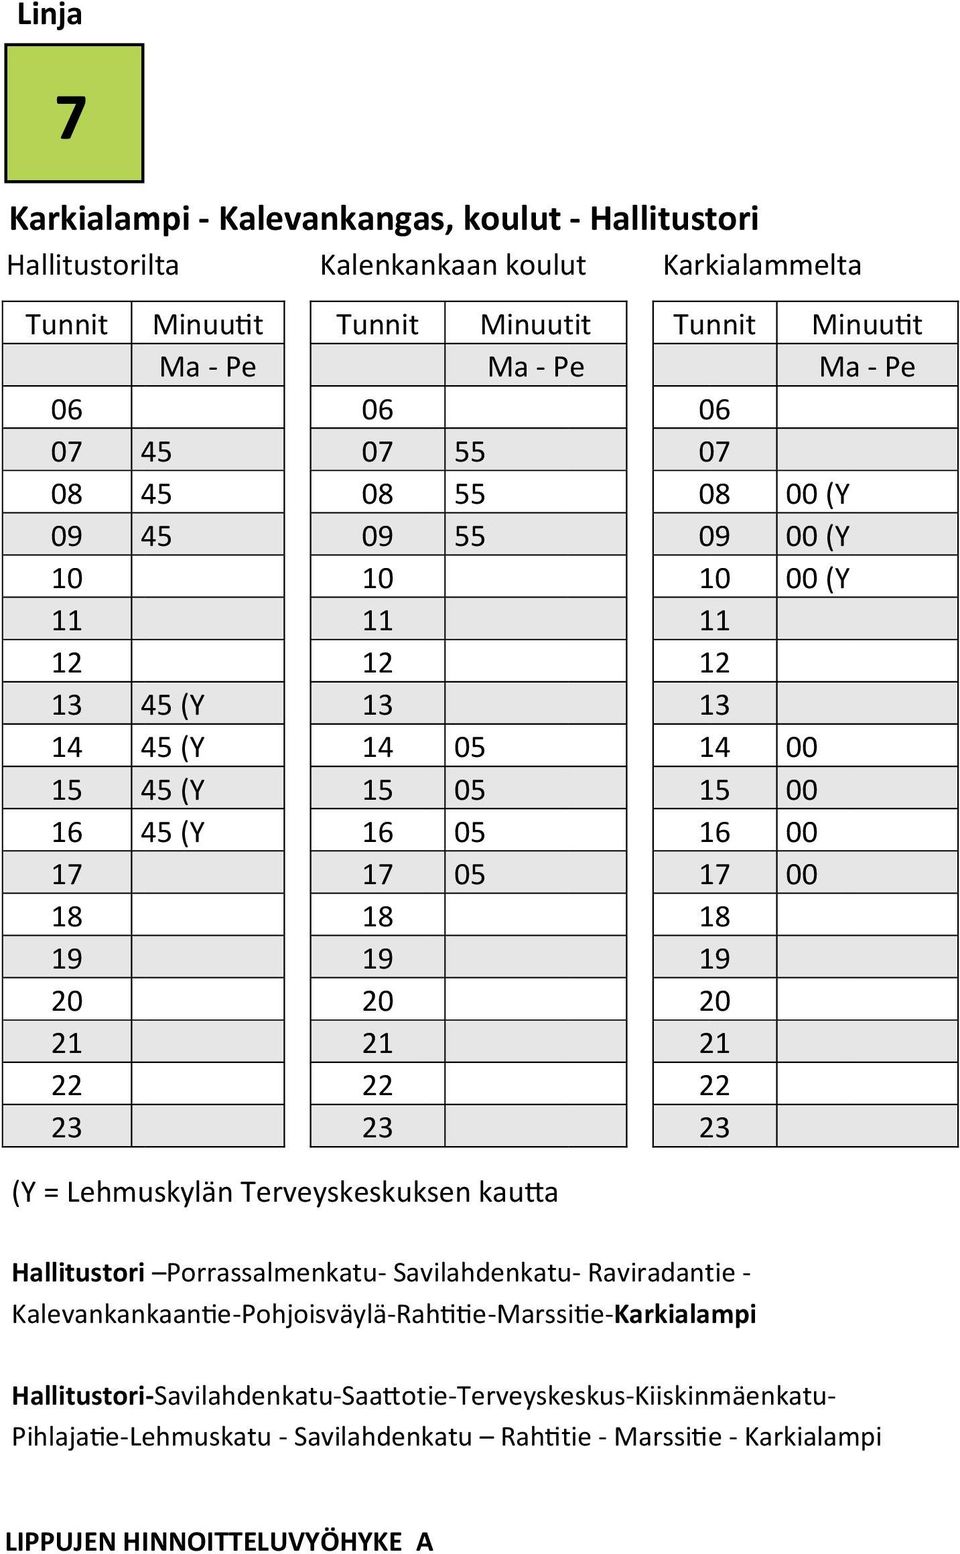 Raviradantie - Kalevankankaantie-Pohjoisväylä-Rahtitie-Marssitie-Karkialampi Tunnit Minuutit Ma - Pe 00 (Y 09 00 (Y 00 (Y 00 00 00 00